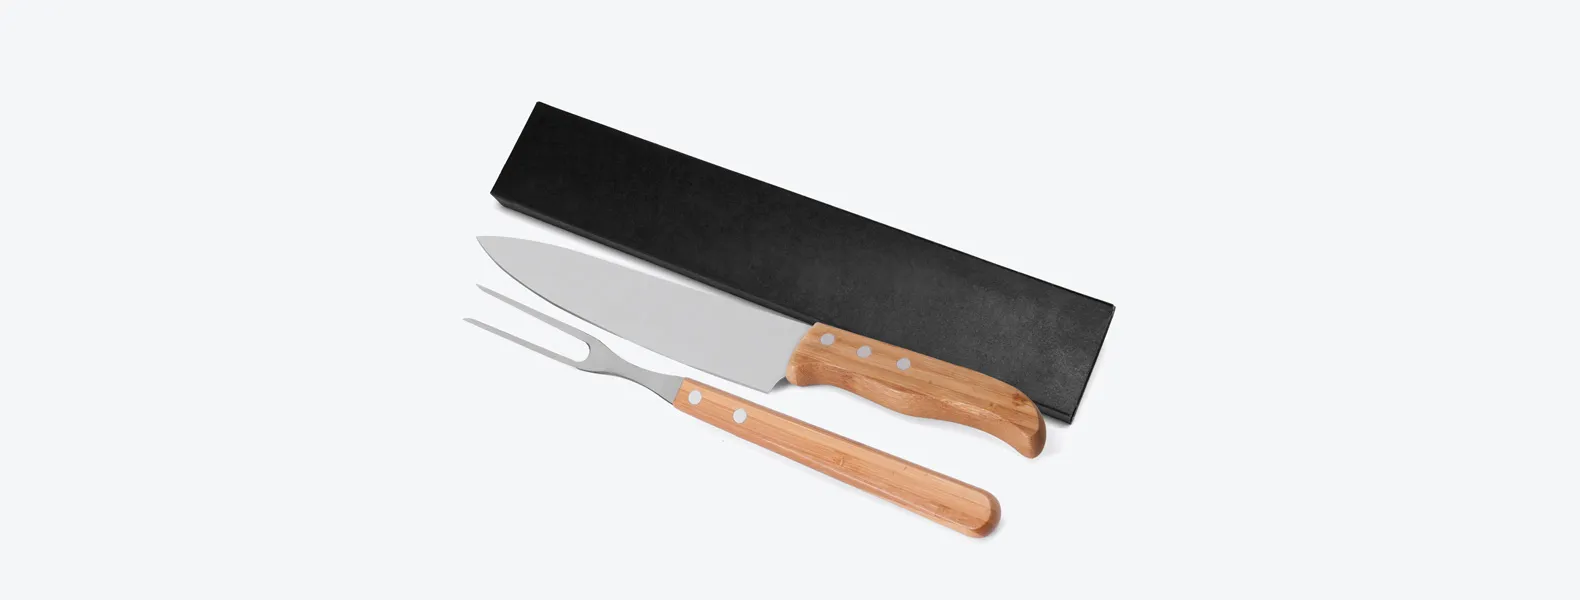 Conjunto de Faca em Bambu/Aço Inox; Acompanha faca 8'', garfo em Bambu/Inox e caixa para presente. Como cortesia, na faca 8 fazemos uma gravação com os cortes do boi.